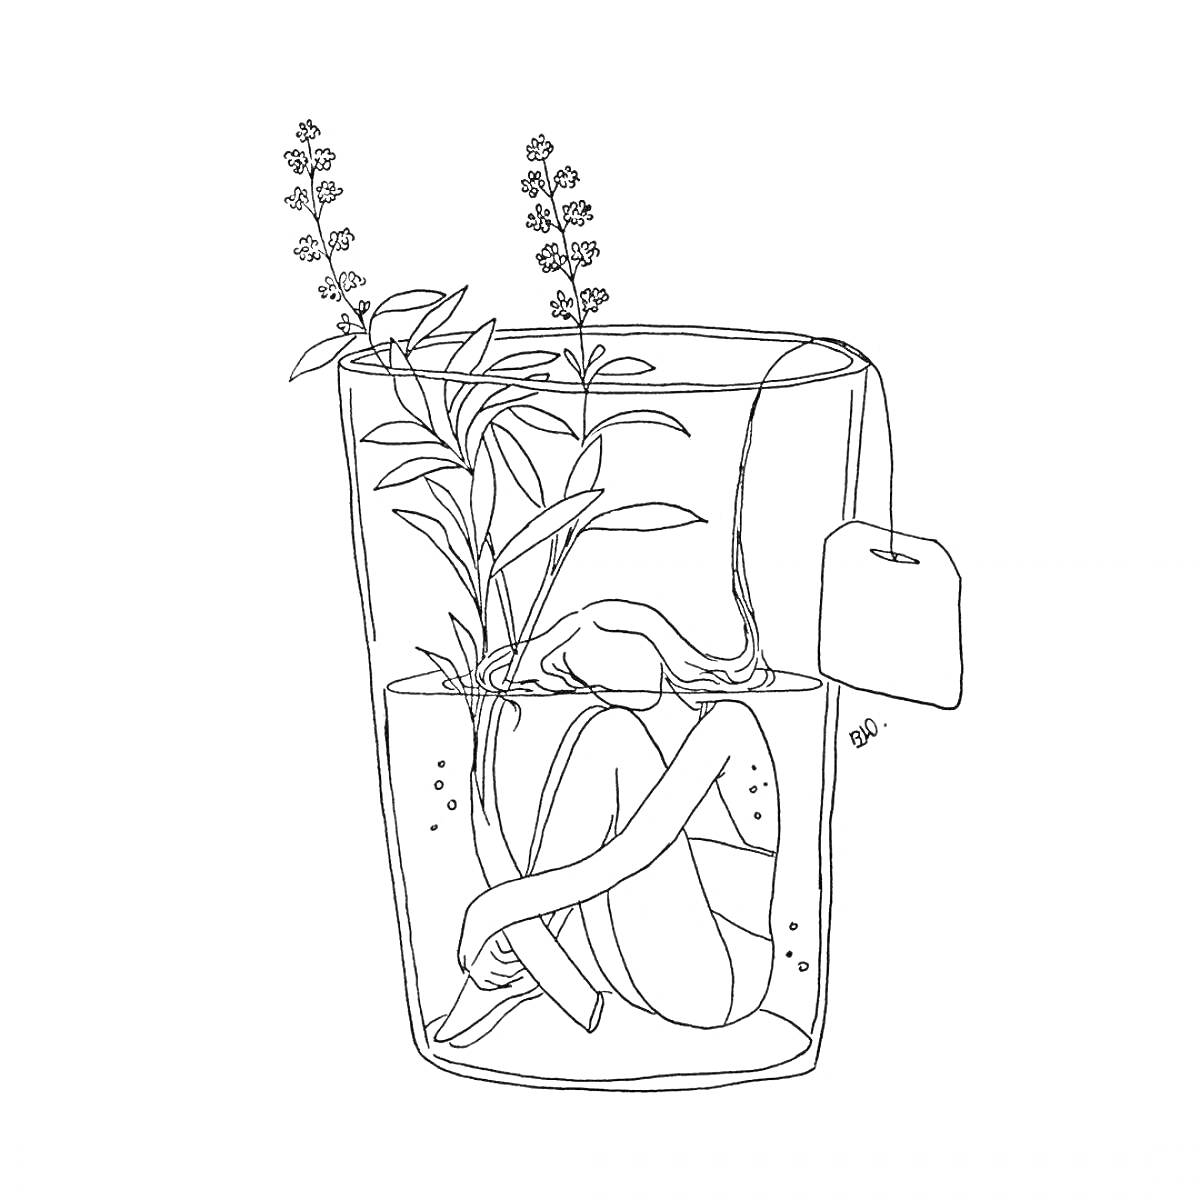 Раскраска Человек в чашке с растениями и чайным пакетиком